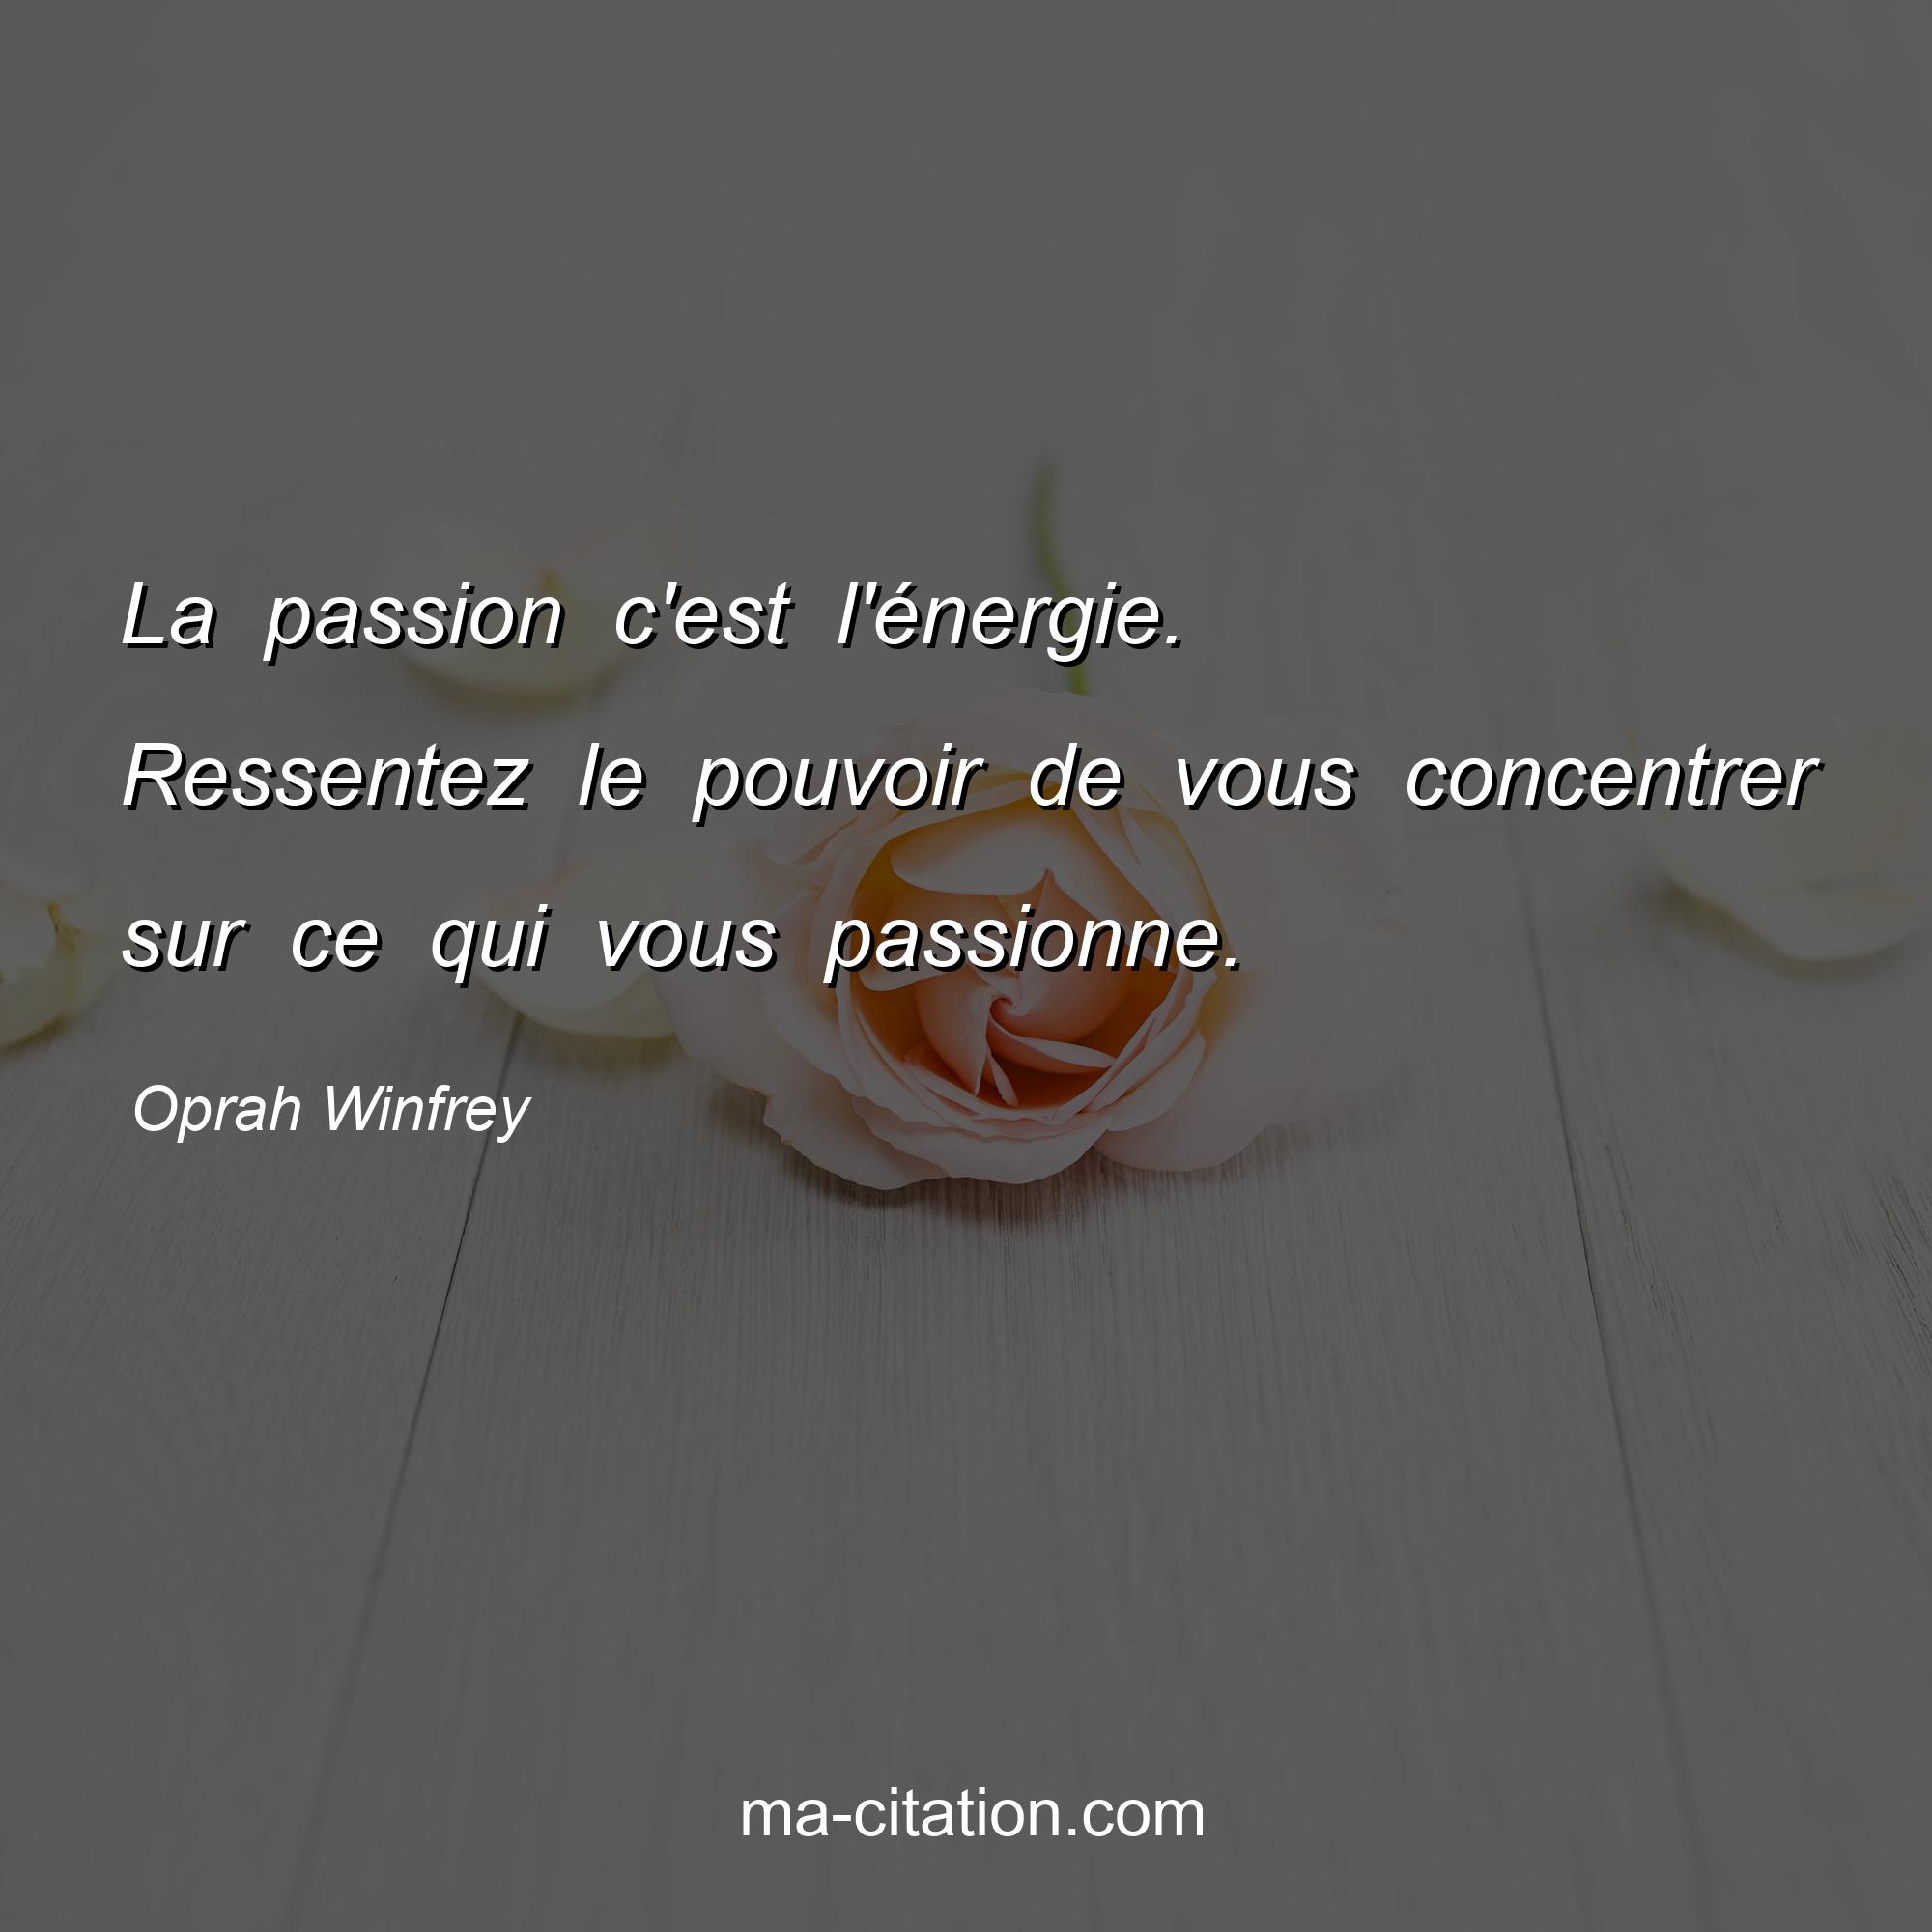 Oprah Winfrey : La passion c'est l'énergie. Ressentez le pouvoir de vous concentrer sur ce qui vous passionne.